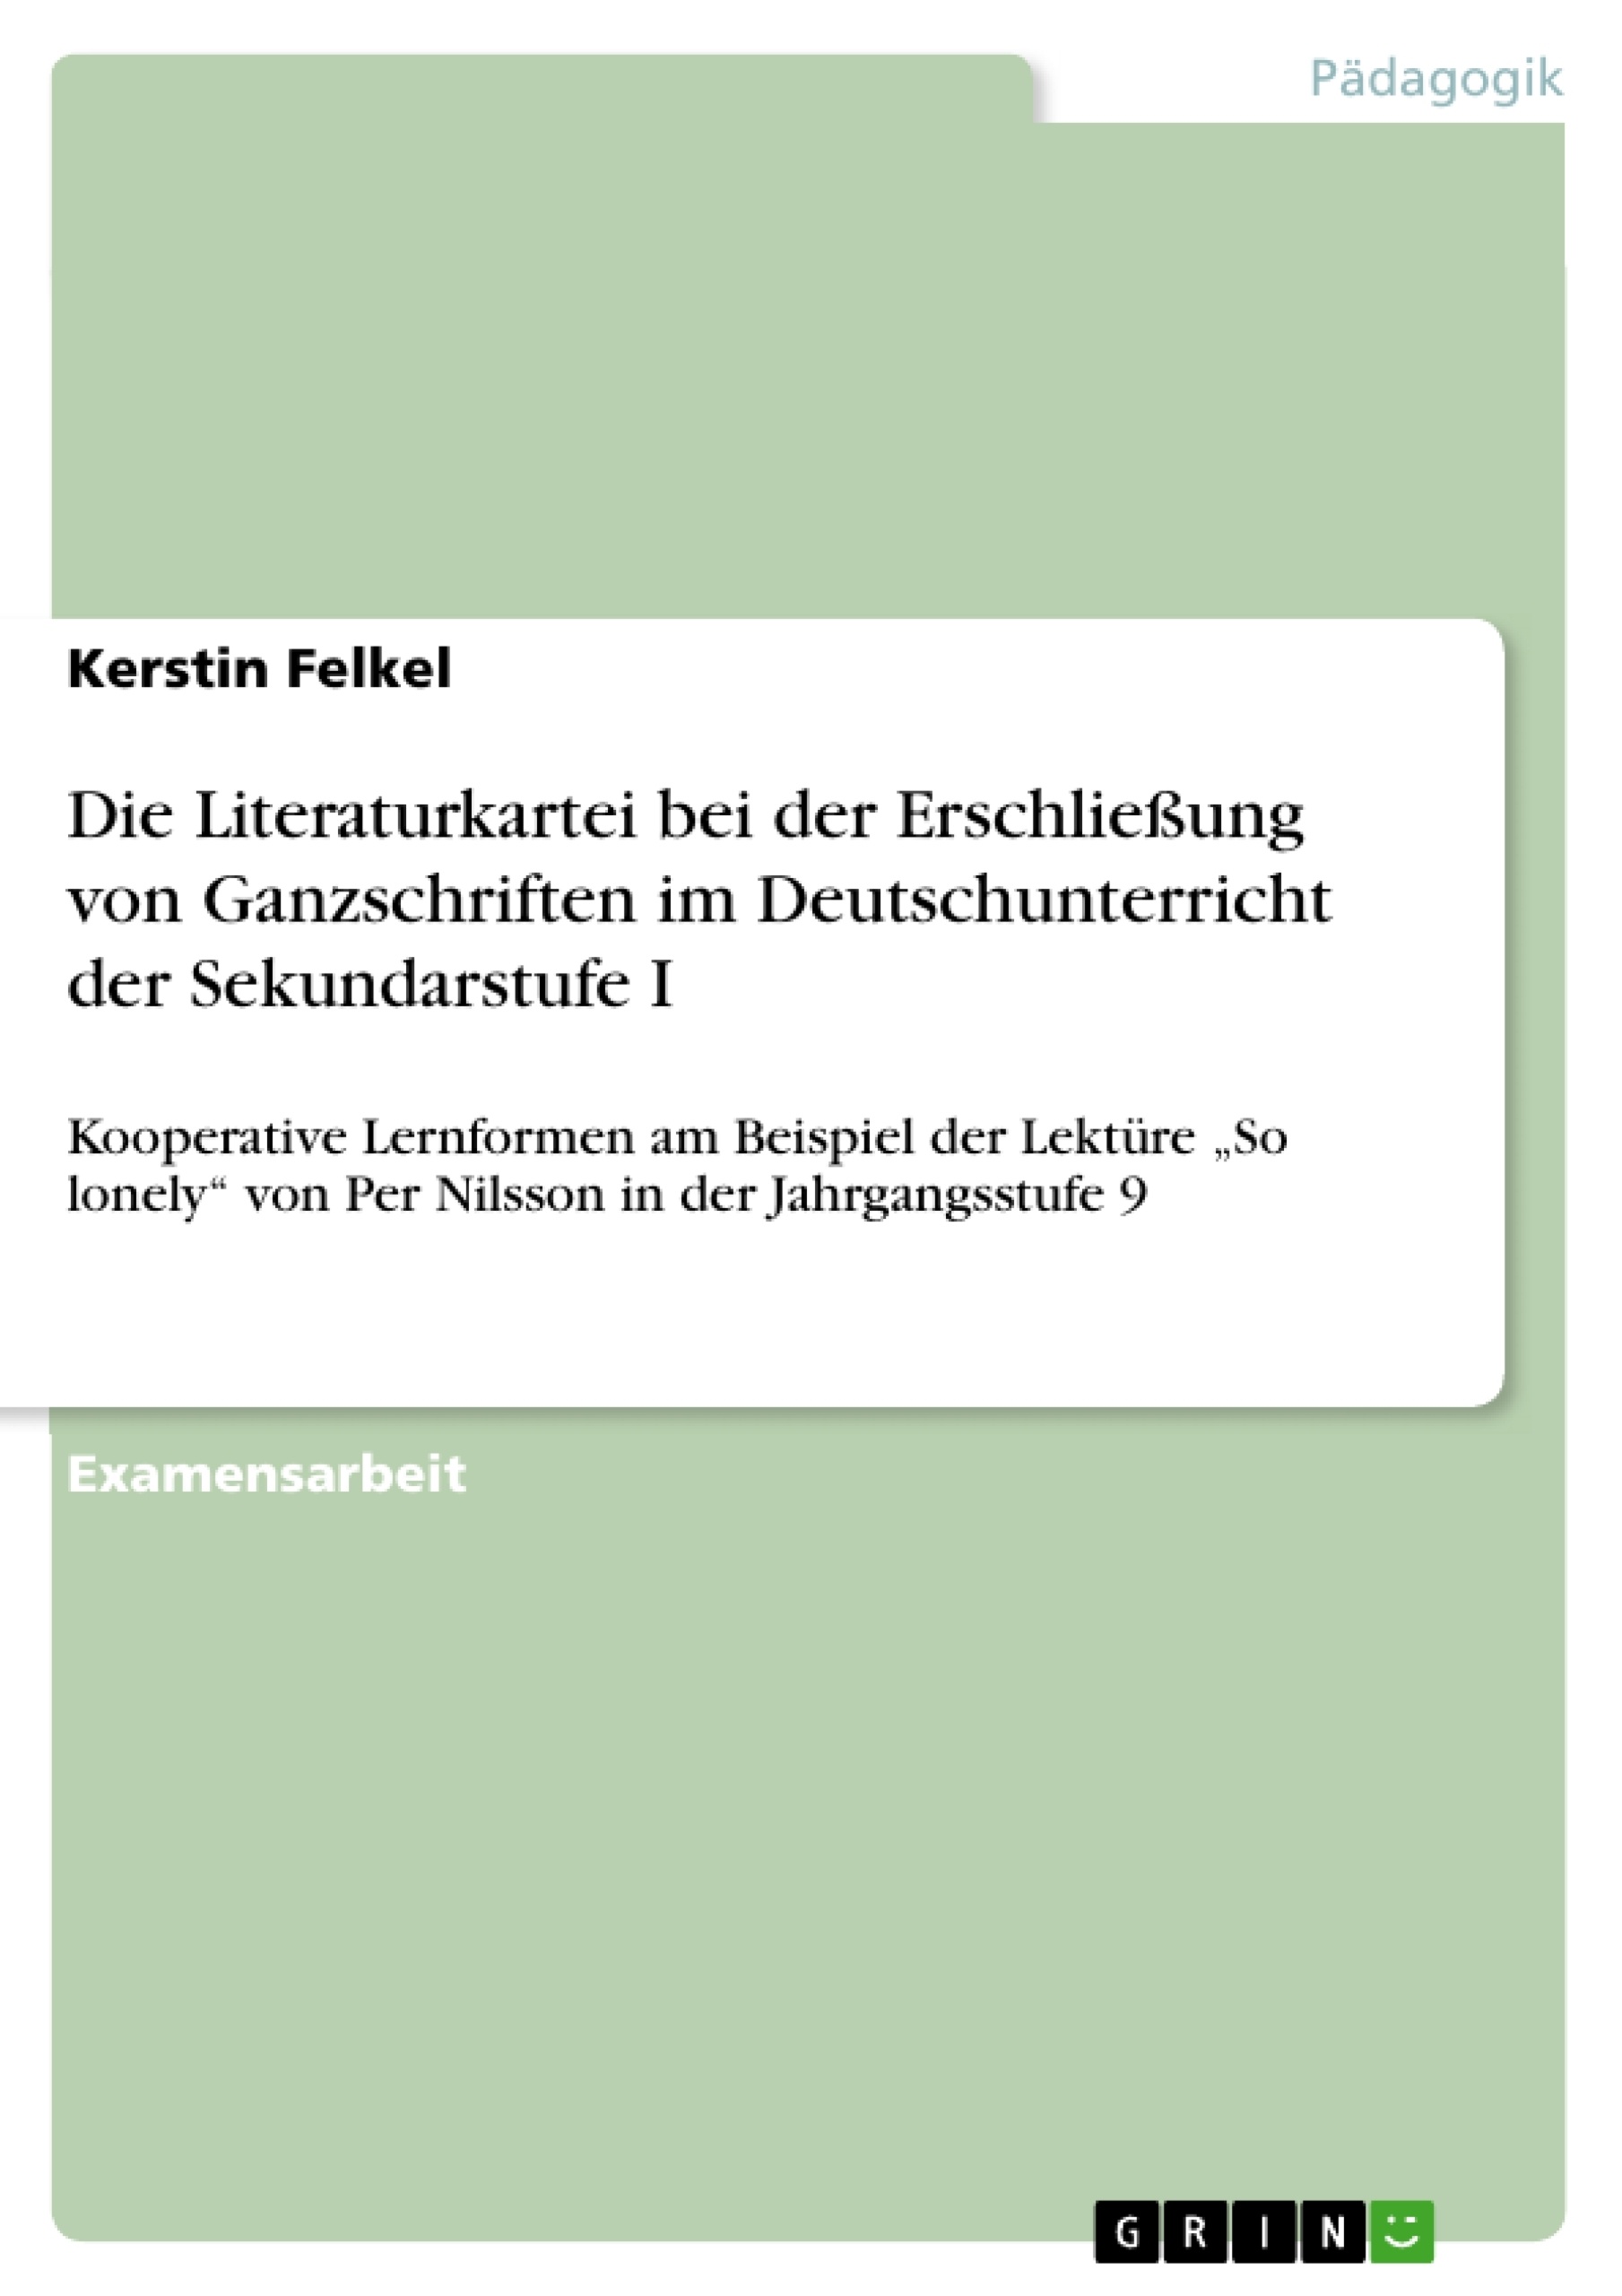 Título: Die Literaturkartei bei der Erschließung von Ganzschriften im Deutschunterricht der Sekundarstufe I